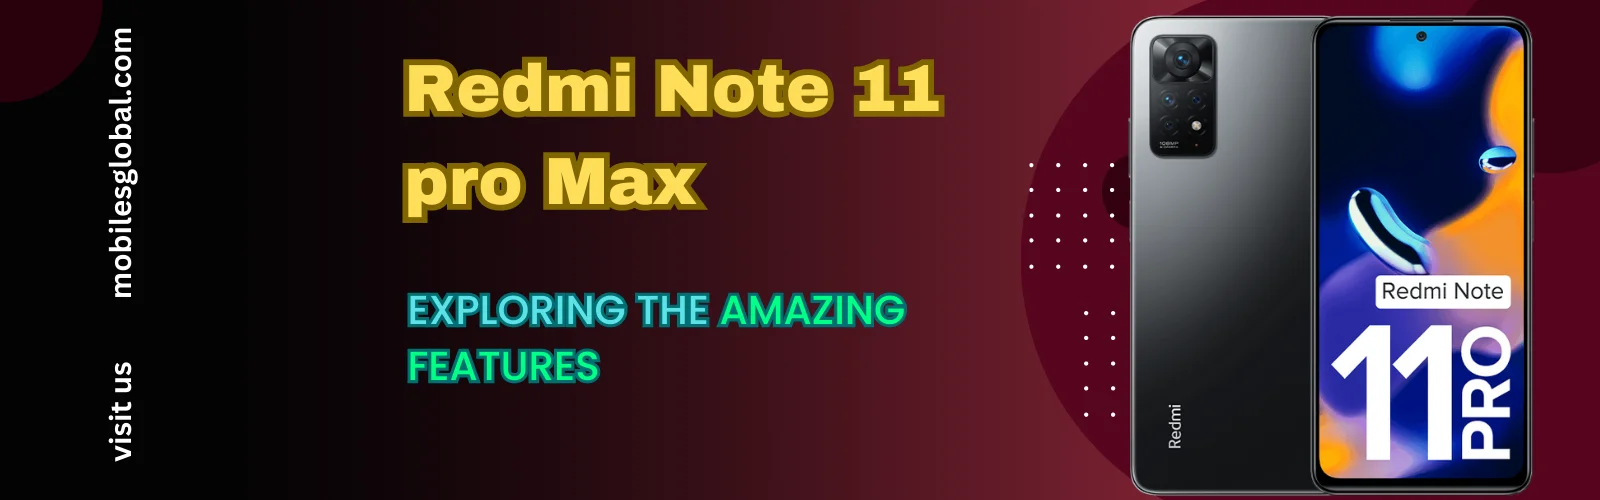 Redmi Note 11 pro Max